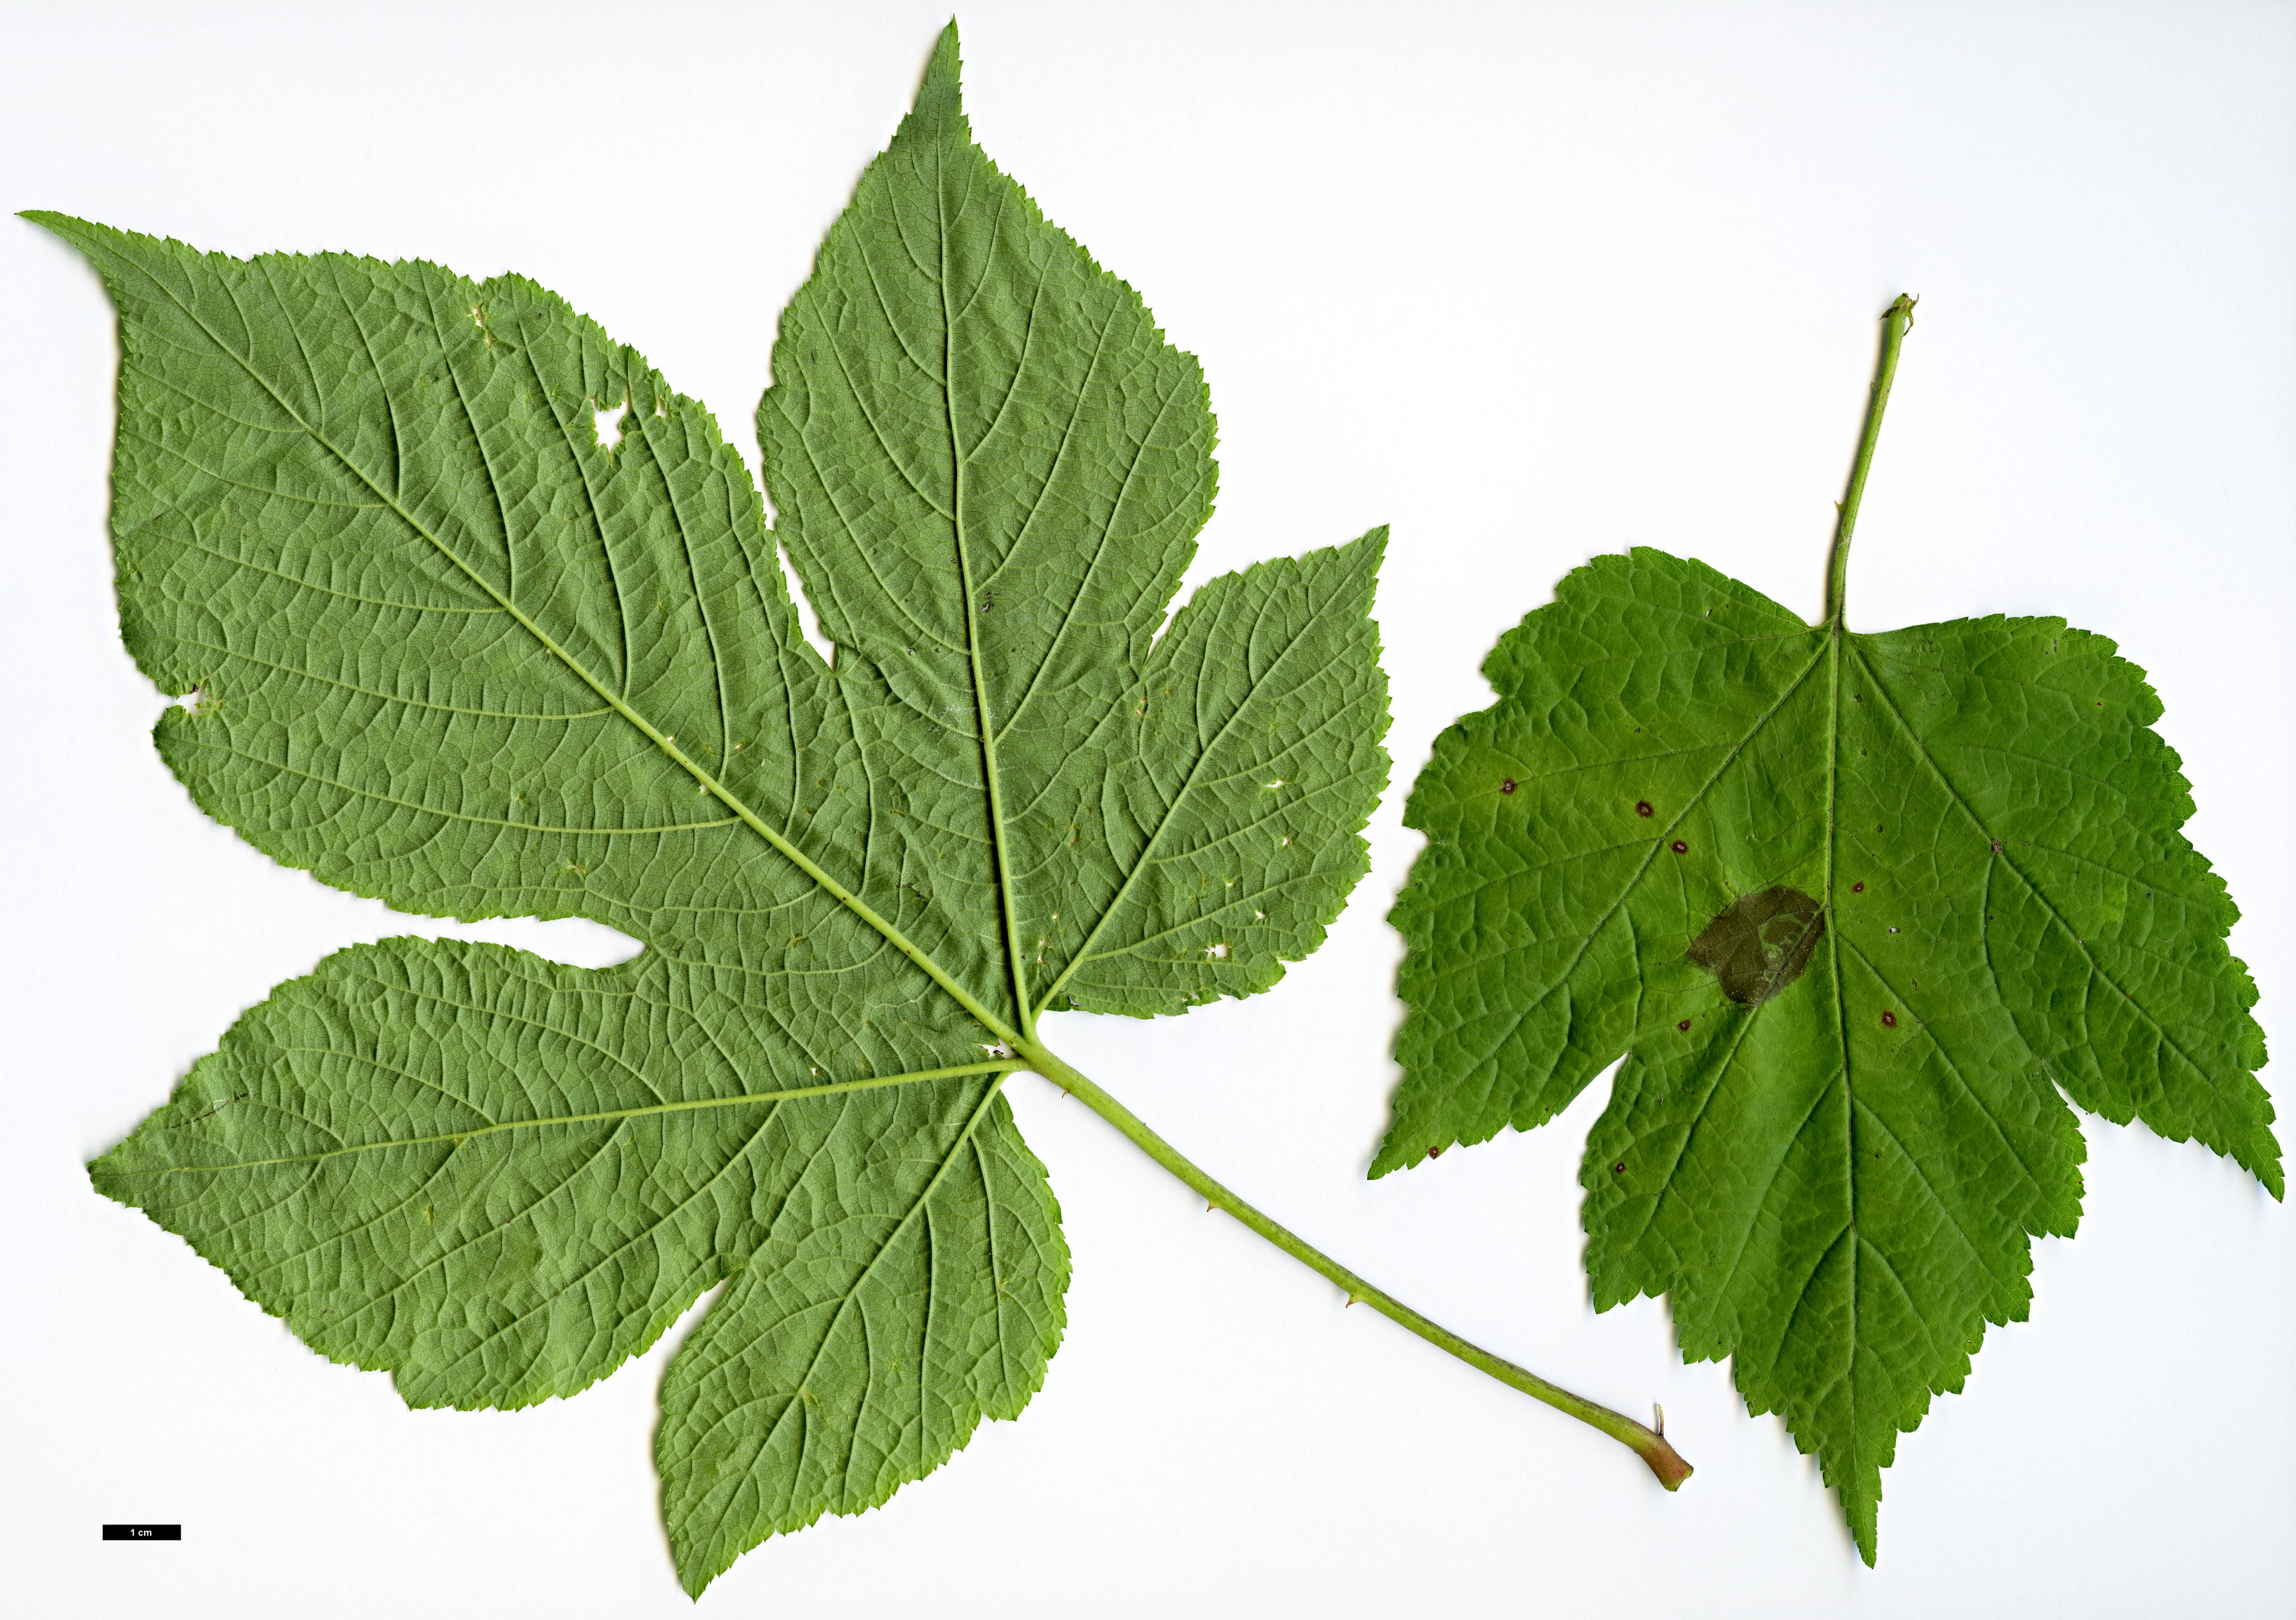 High resolution image: Family: Rosaceae - Genus: Rubus - Taxon: crataegifolius